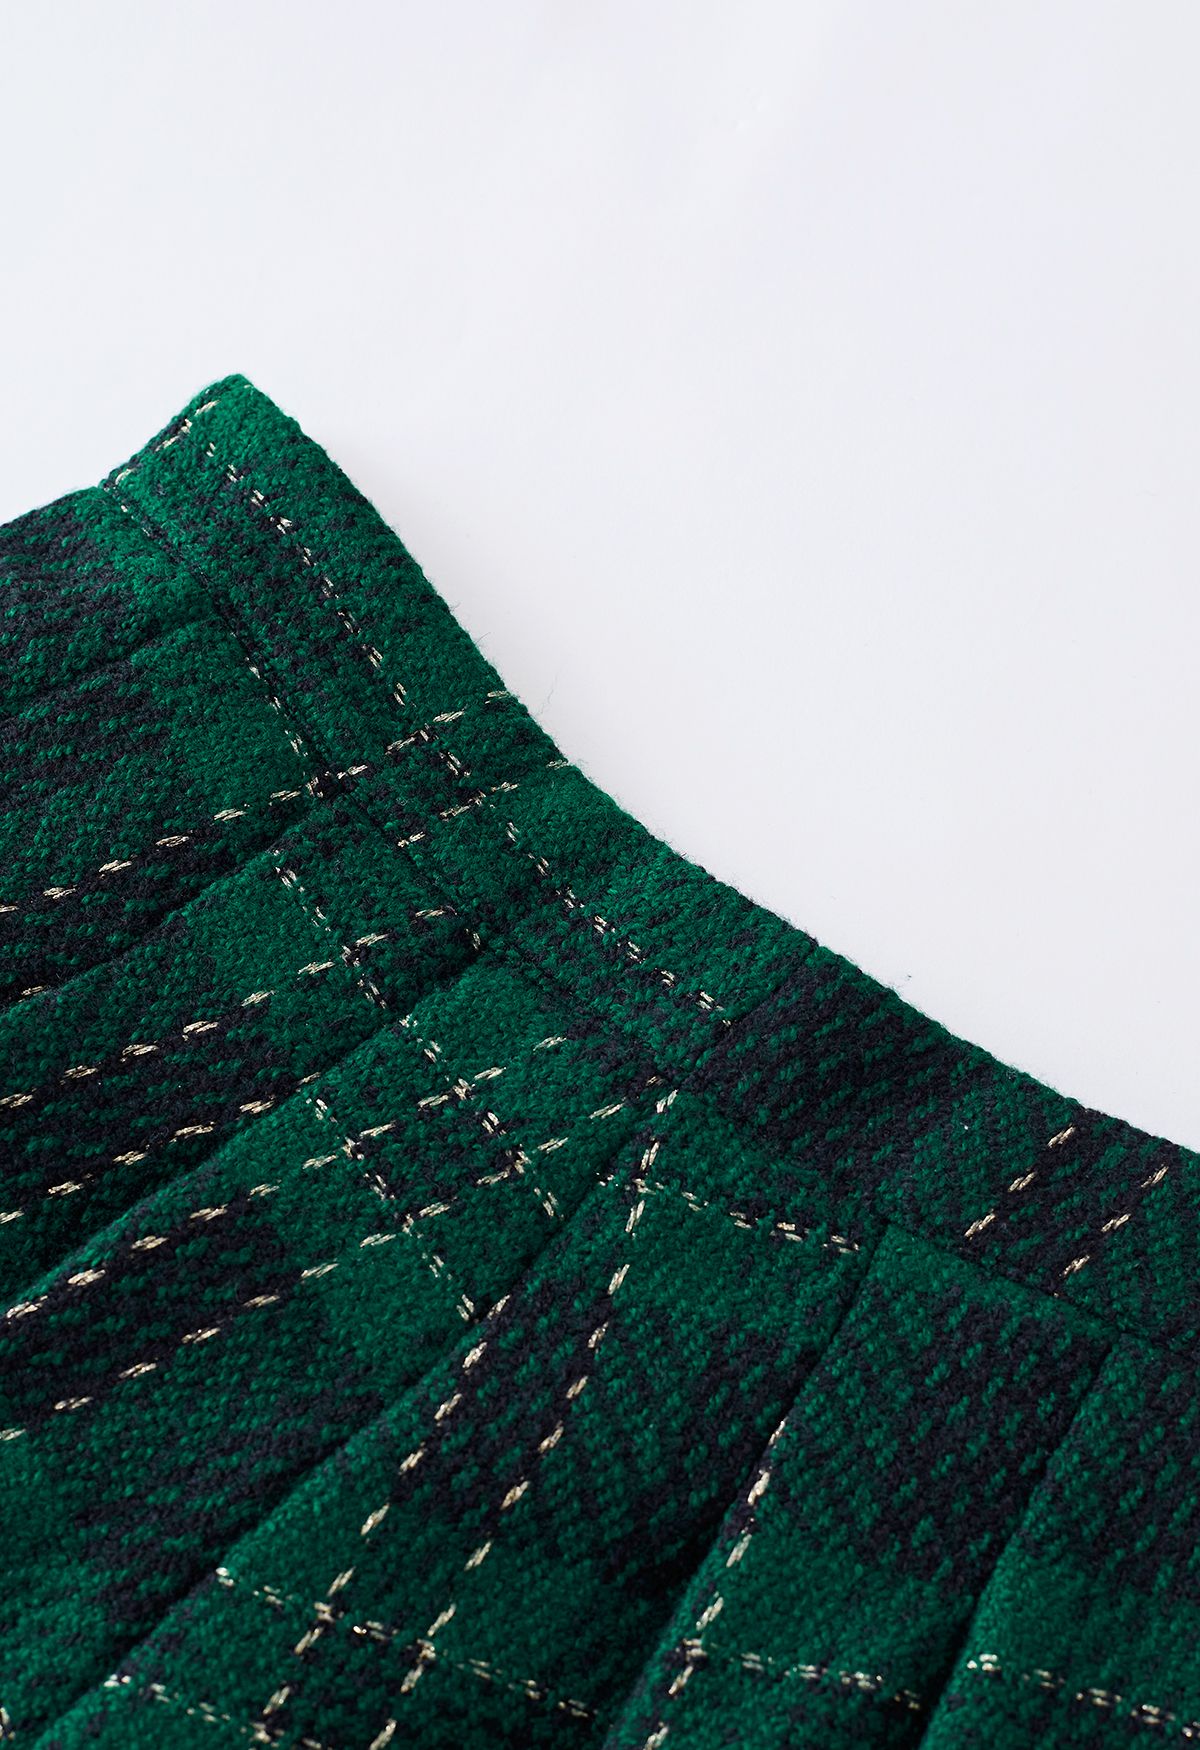 Ensemble veste courte en tweed à carreaux métallisés et jupe plissée en vert